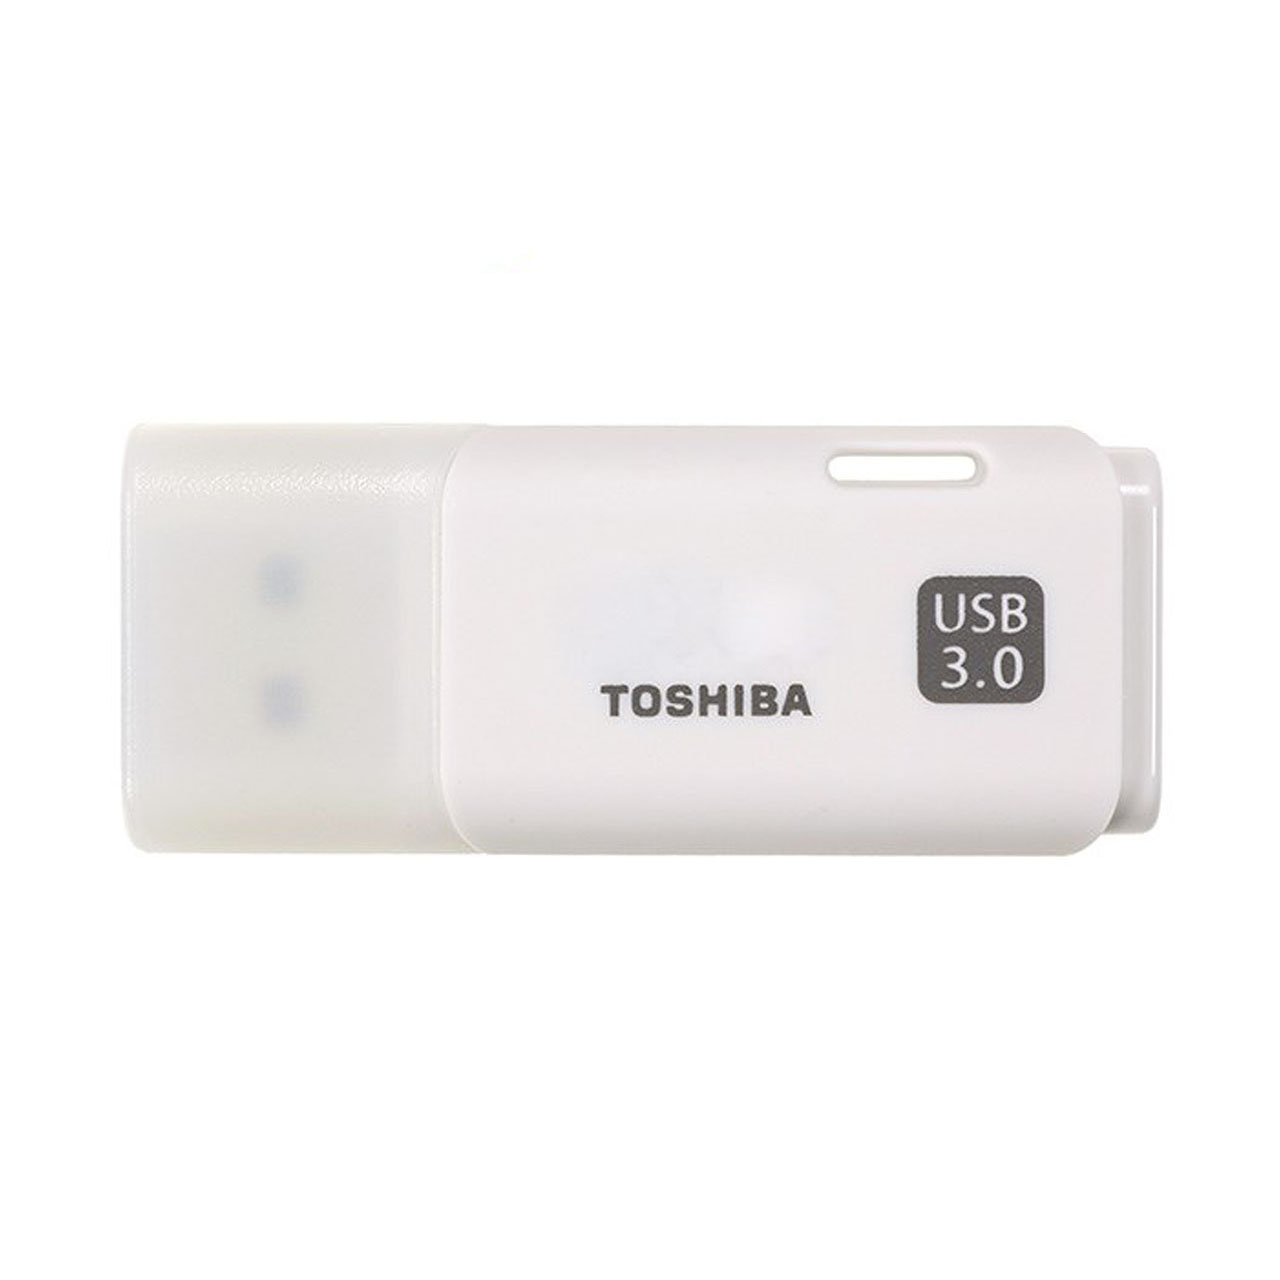 فلش مموری USB 3.0 توشیبا مدل U301 هایابوسا ظرفیت 16 گیگابایت